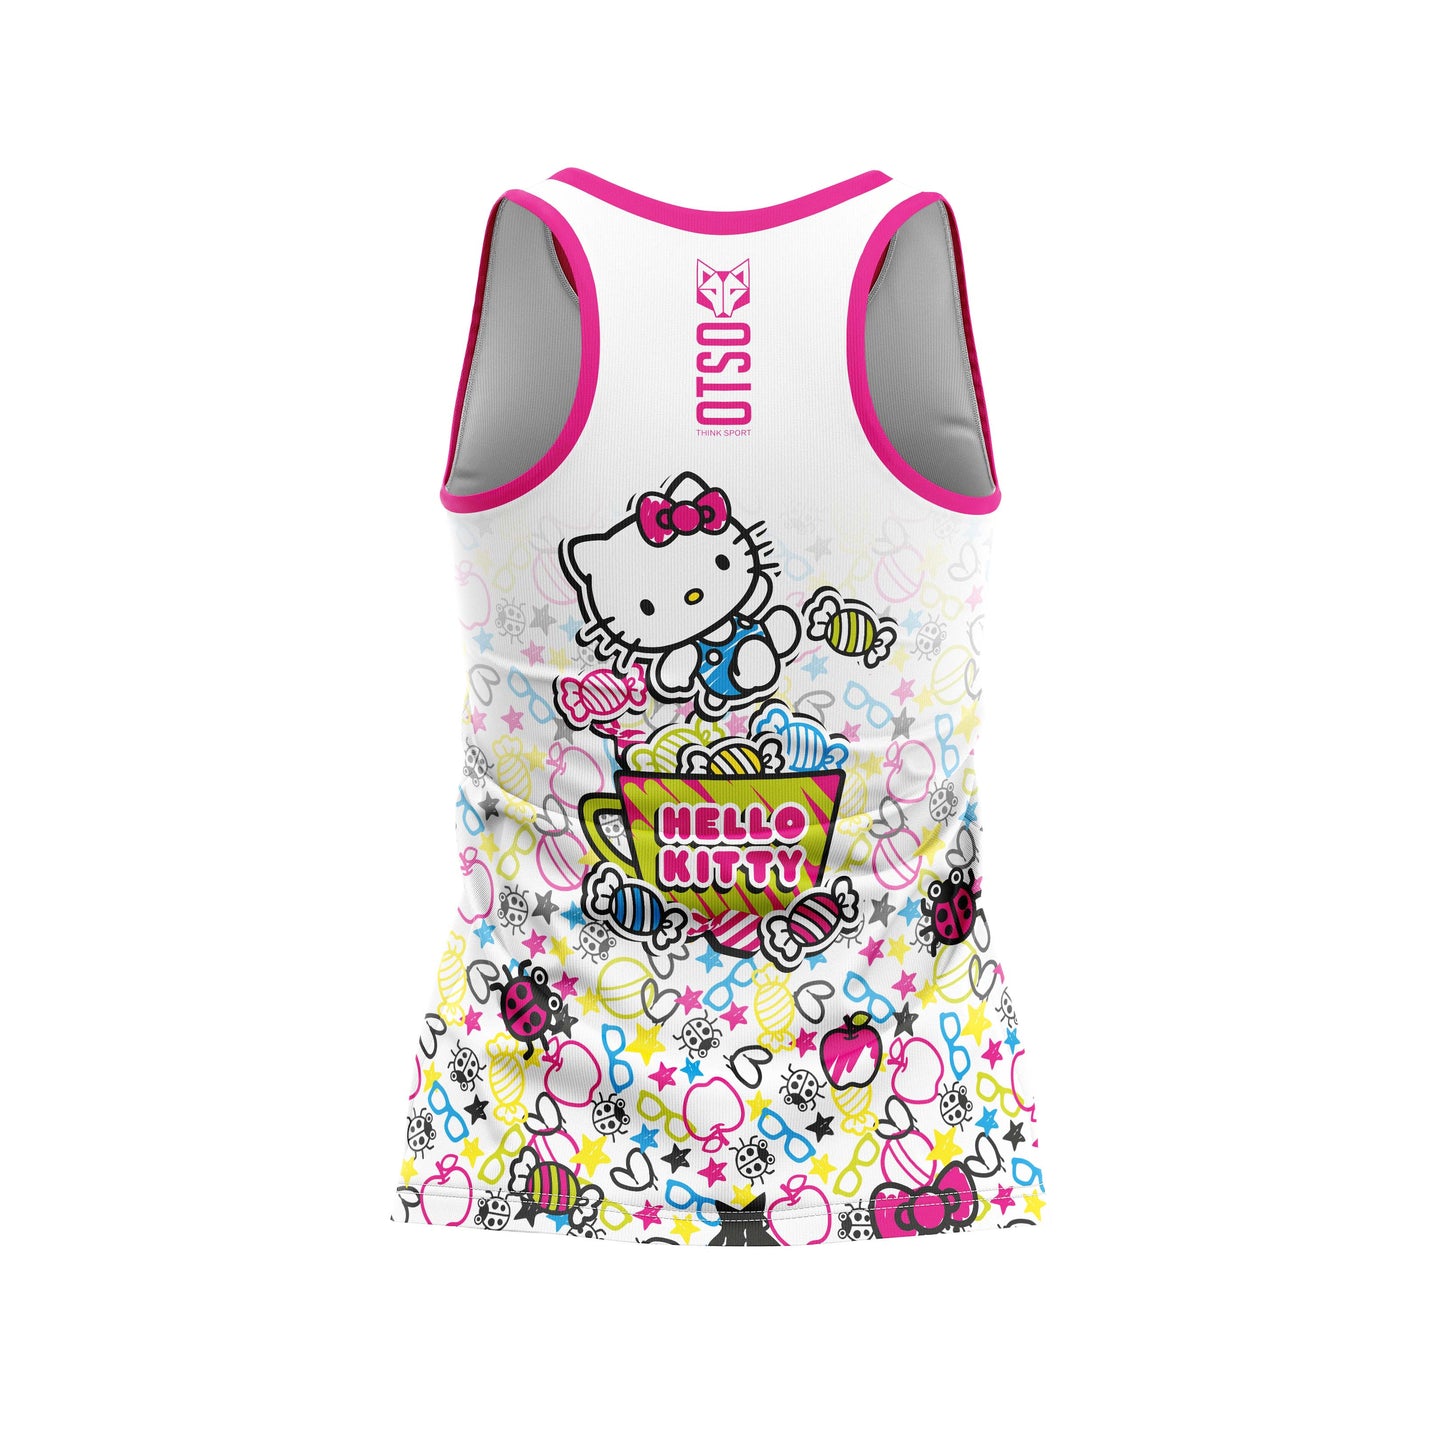 Girls and women's sleeveless t-shirt - Hello Kitty Sweet